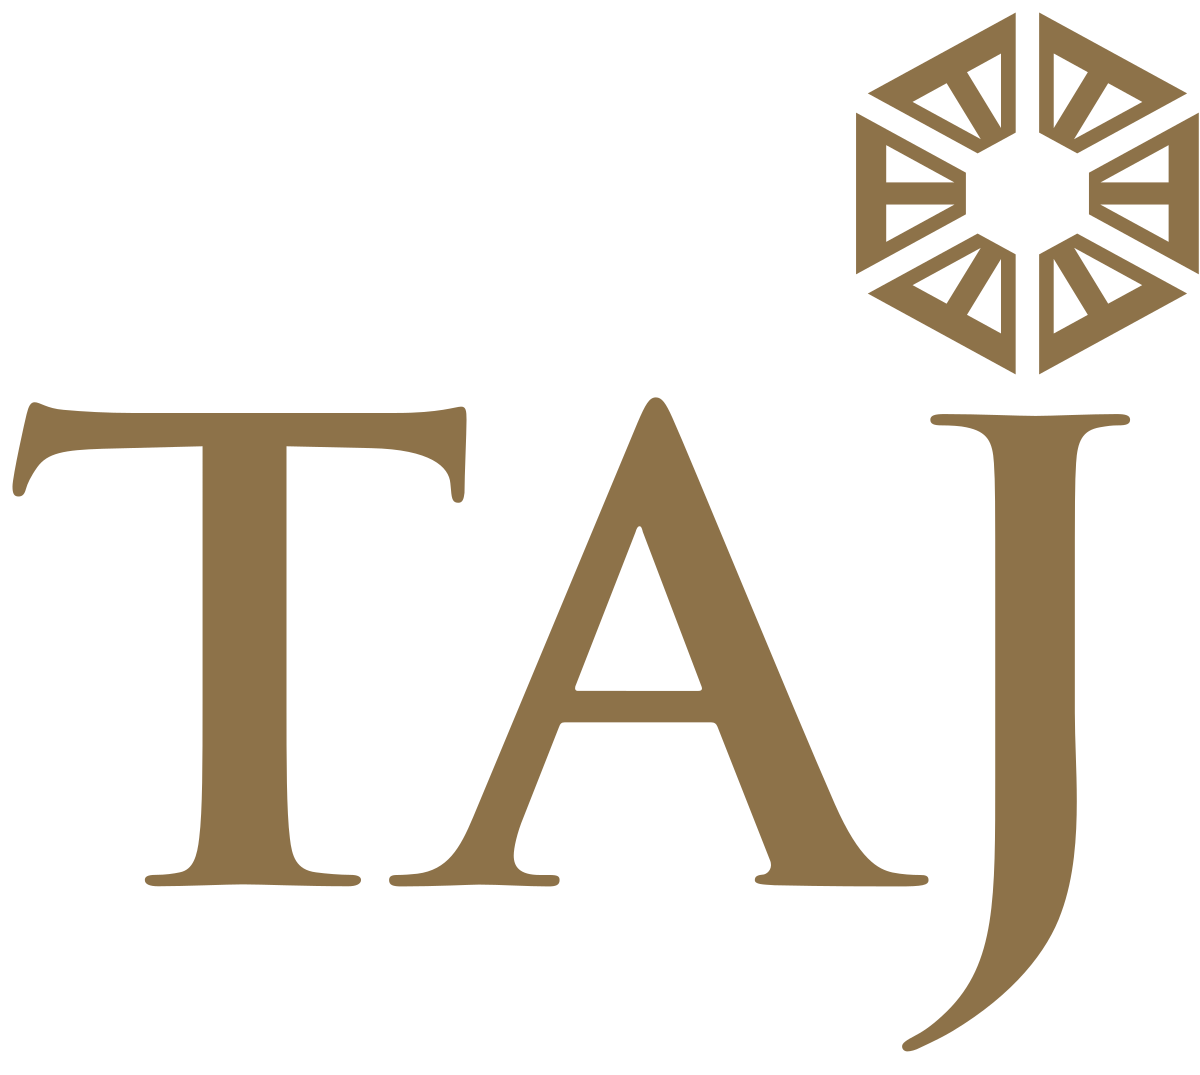 Taj Brands Logo - Taj Hotels